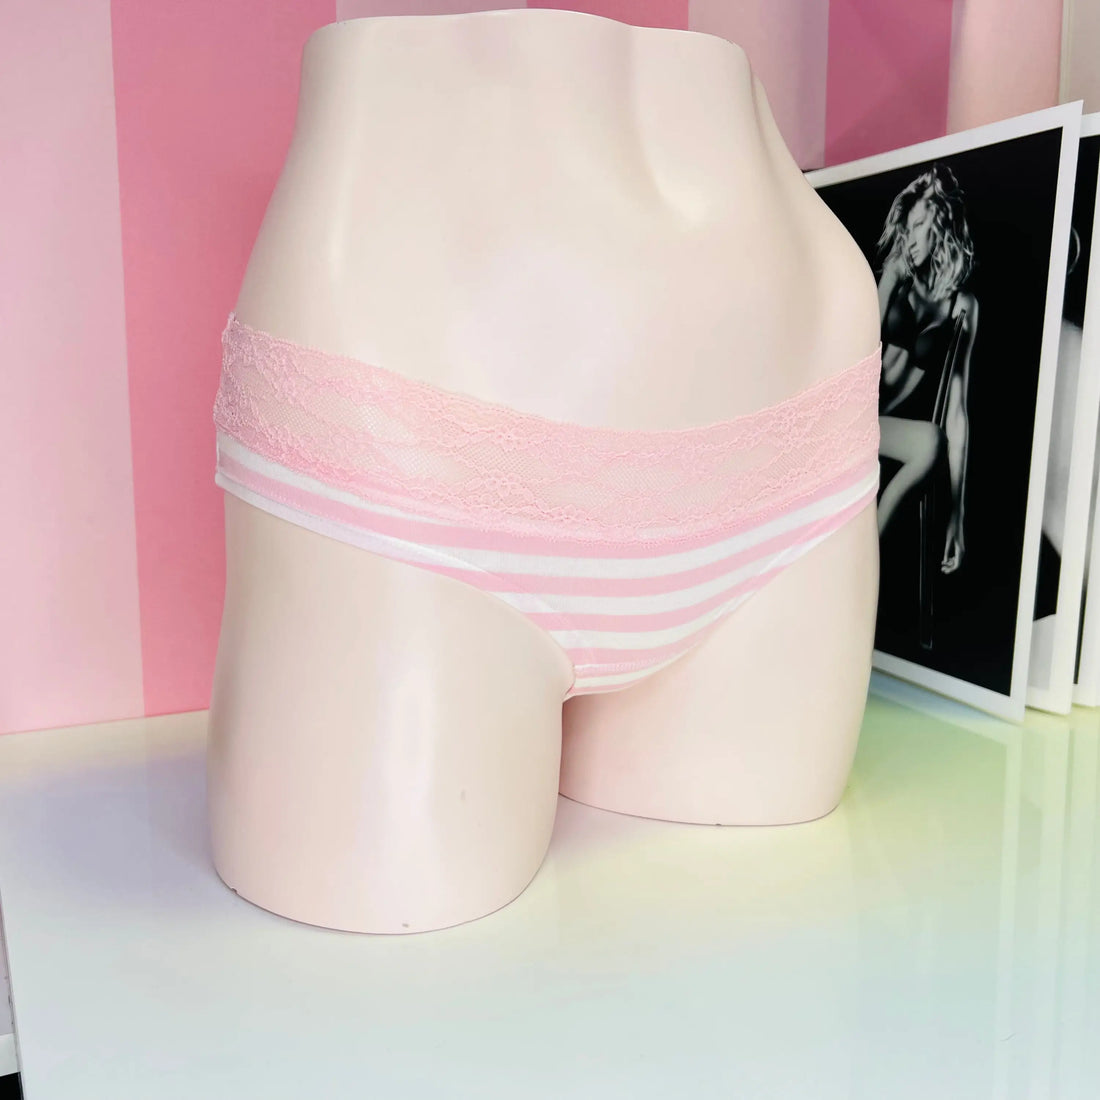 Proužkované kalhotky s krajkou - XS / Růžová / Nové se štítky - Kalhotky Victoria’s Secret